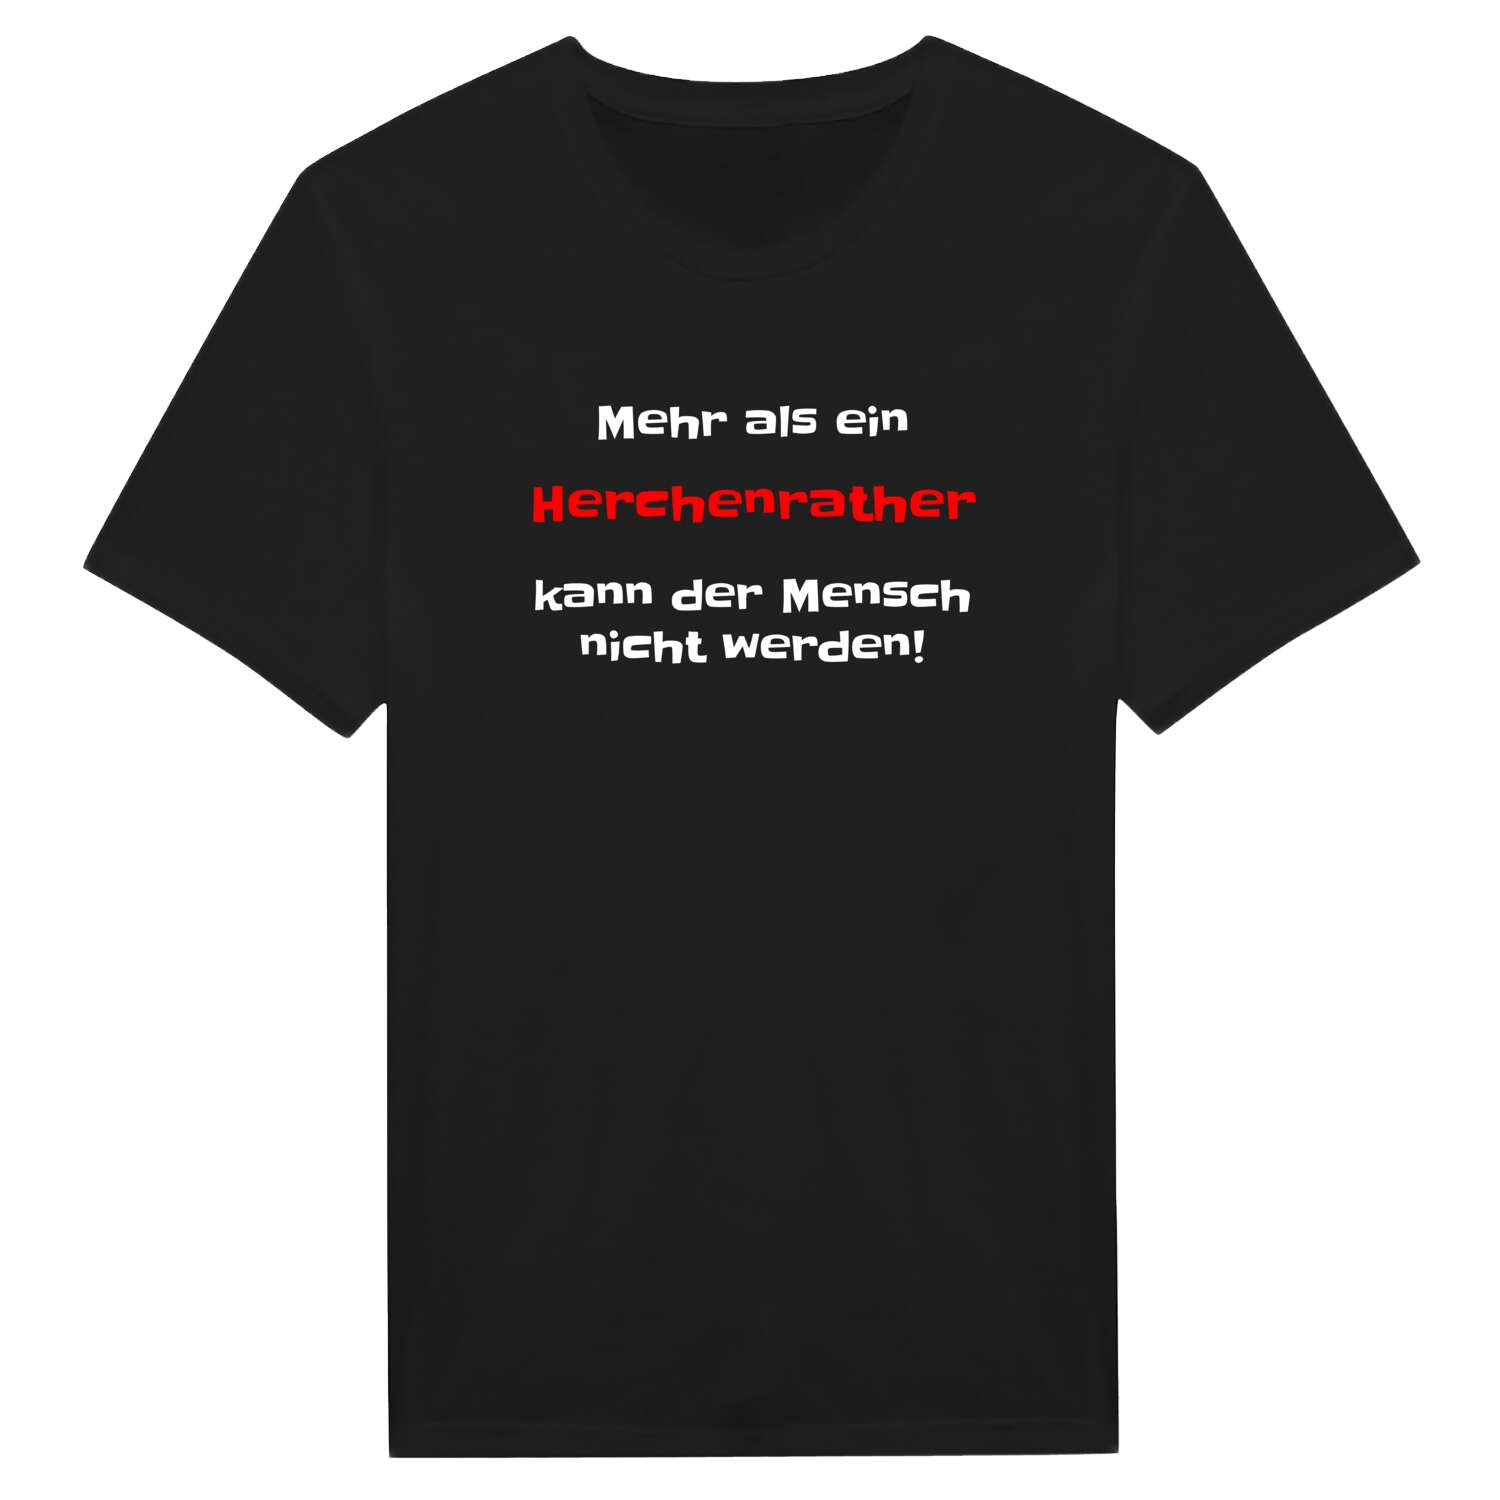 Herchenrath T-Shirt »Mehr als ein«